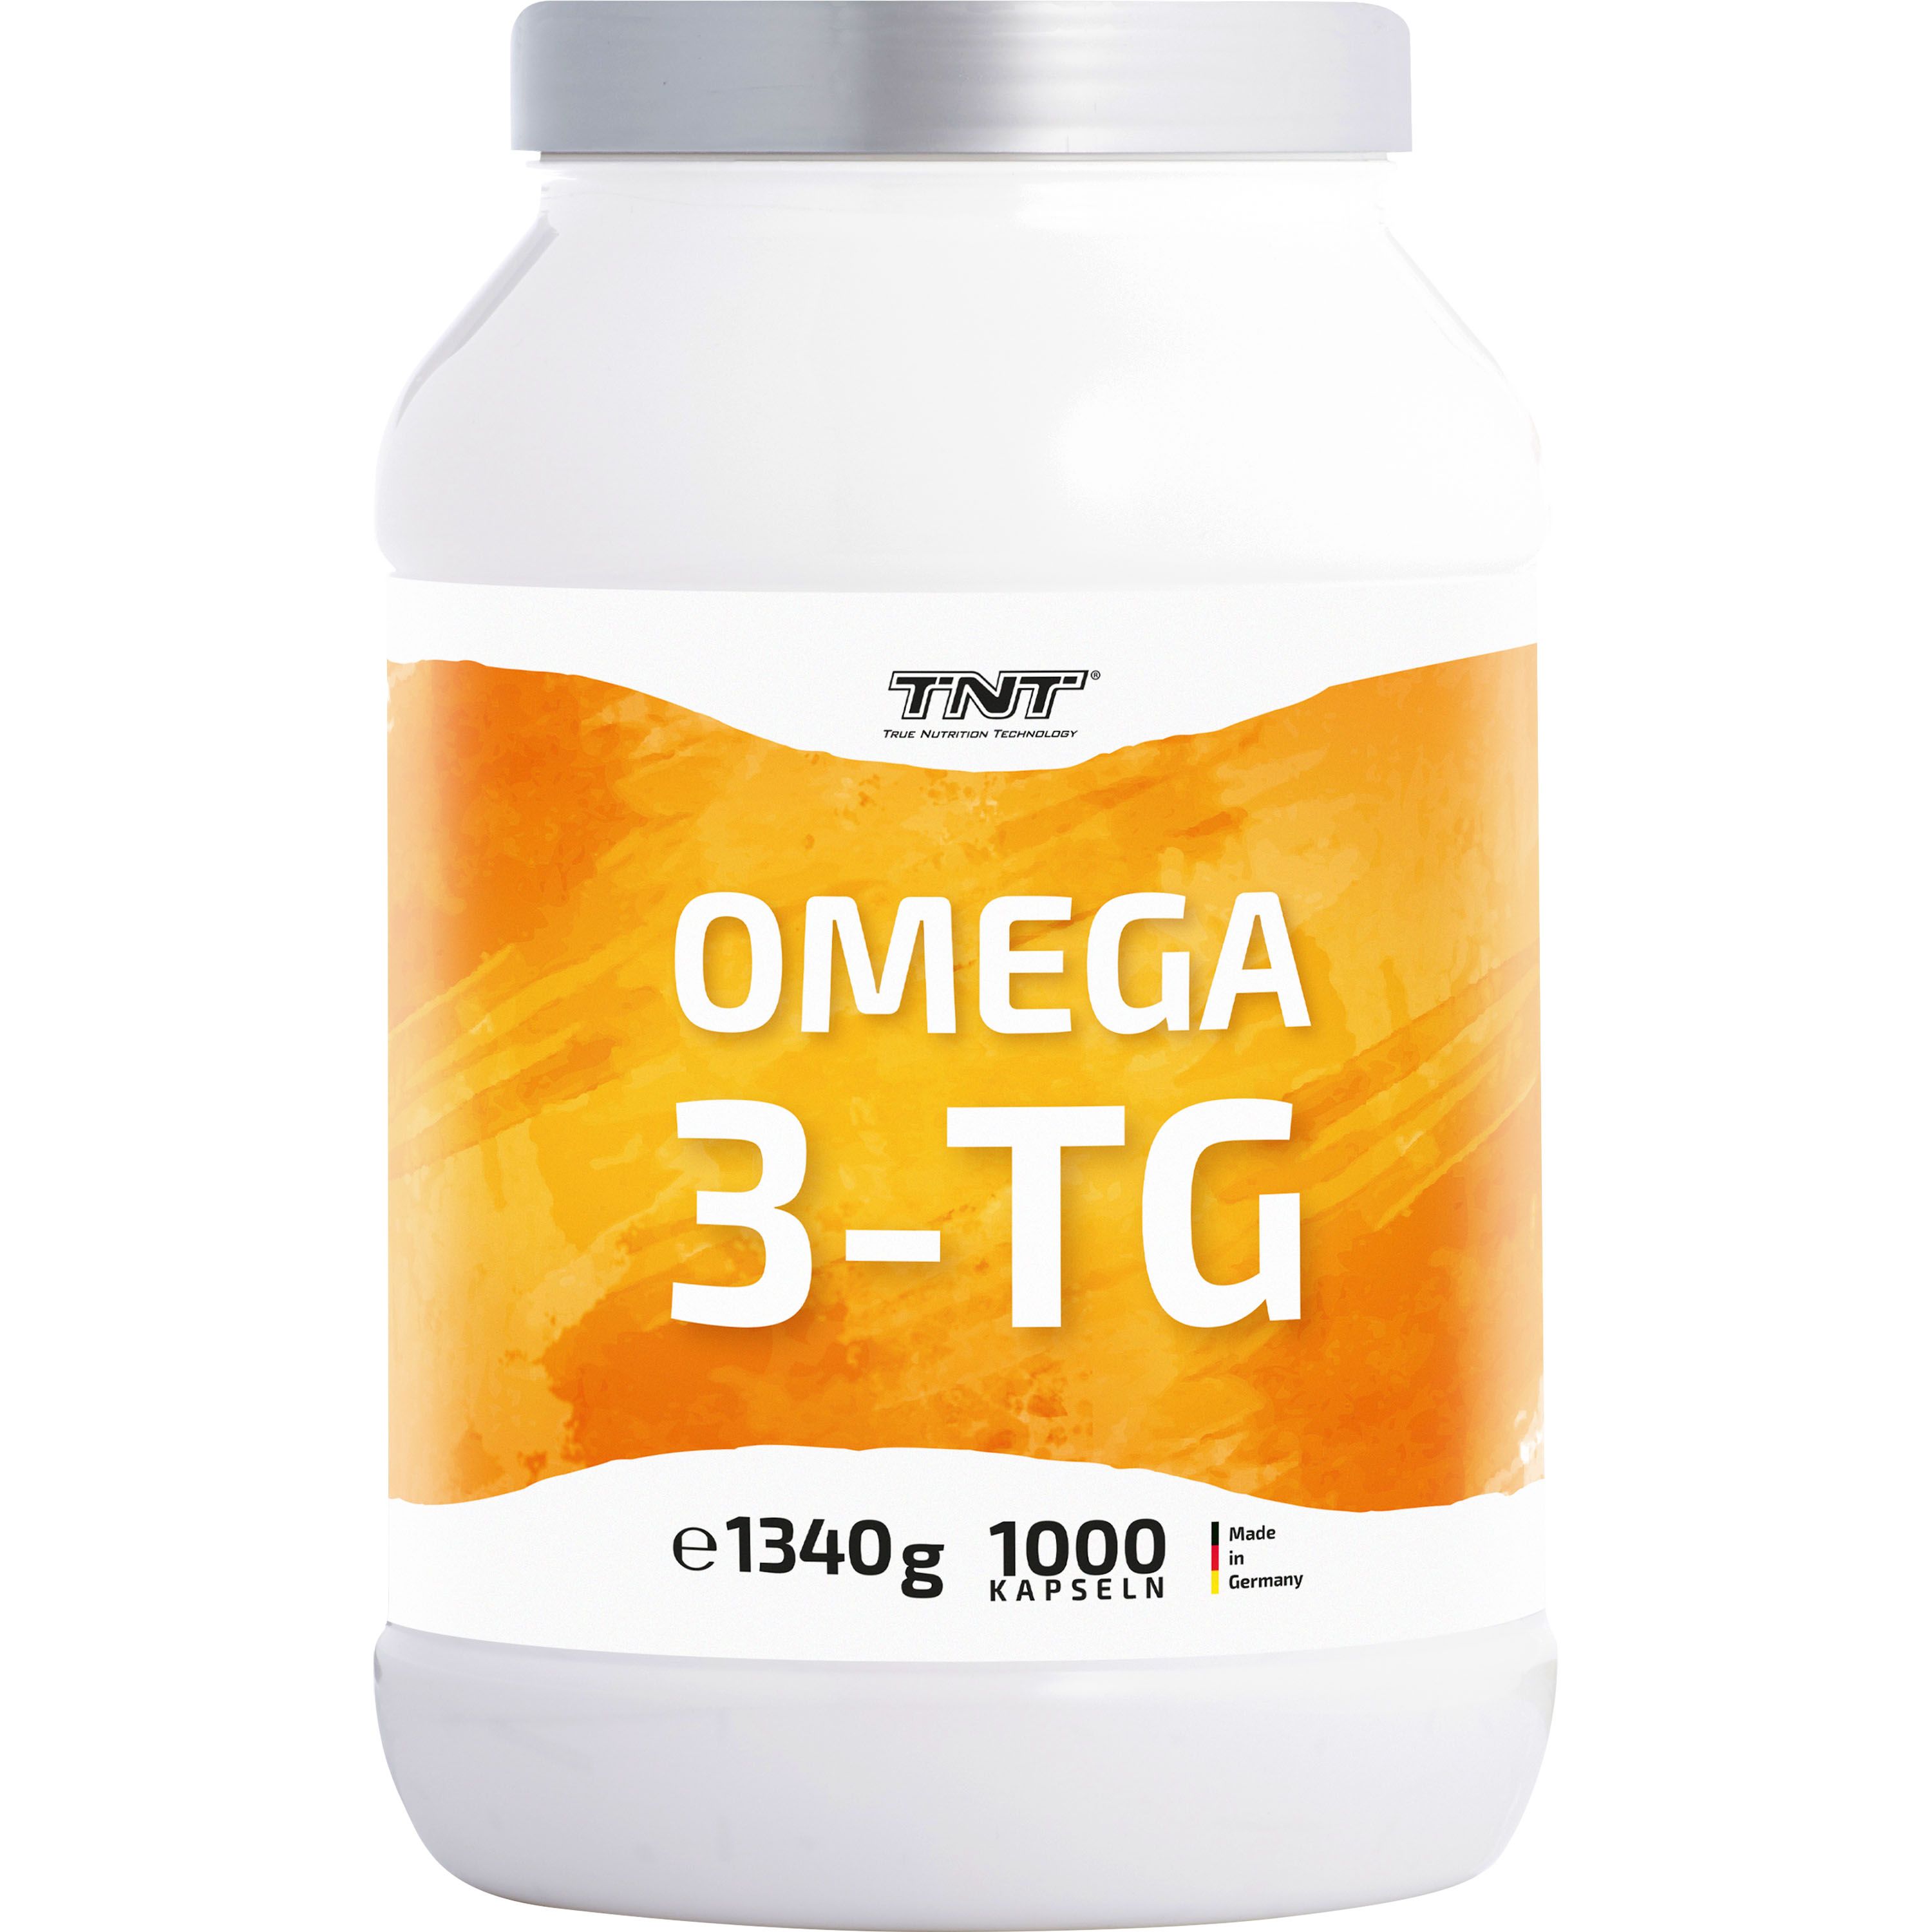 TNT Omega 3-Tg, Fischöl aus wilden Sardellen, wirkt entzündungshemmend